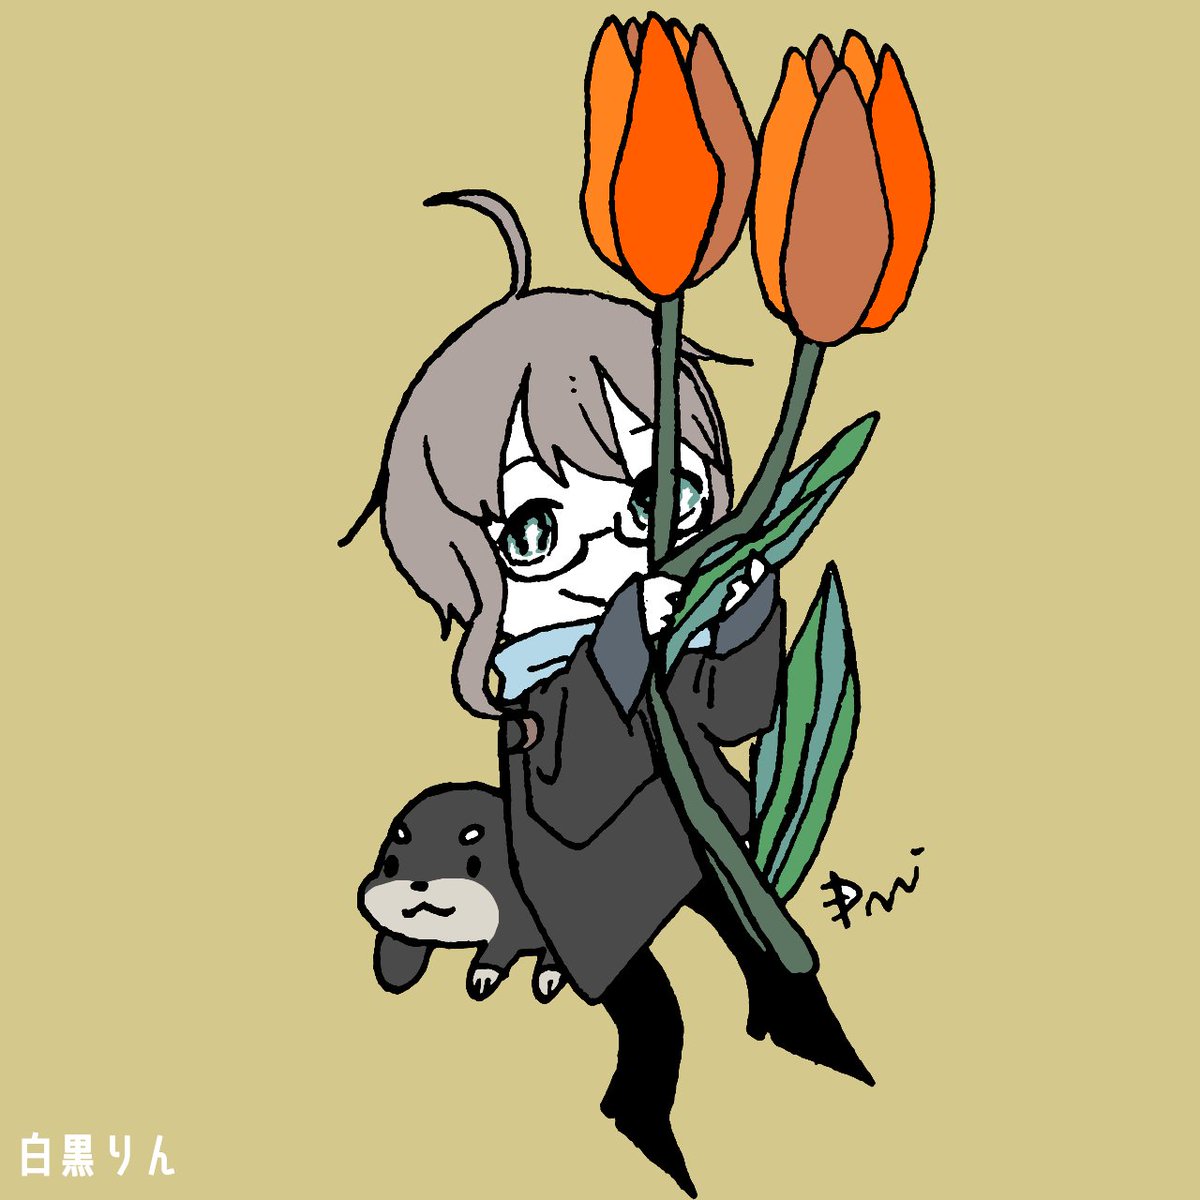 flower glasses ahoge tulip simple background smile holding  illustration images